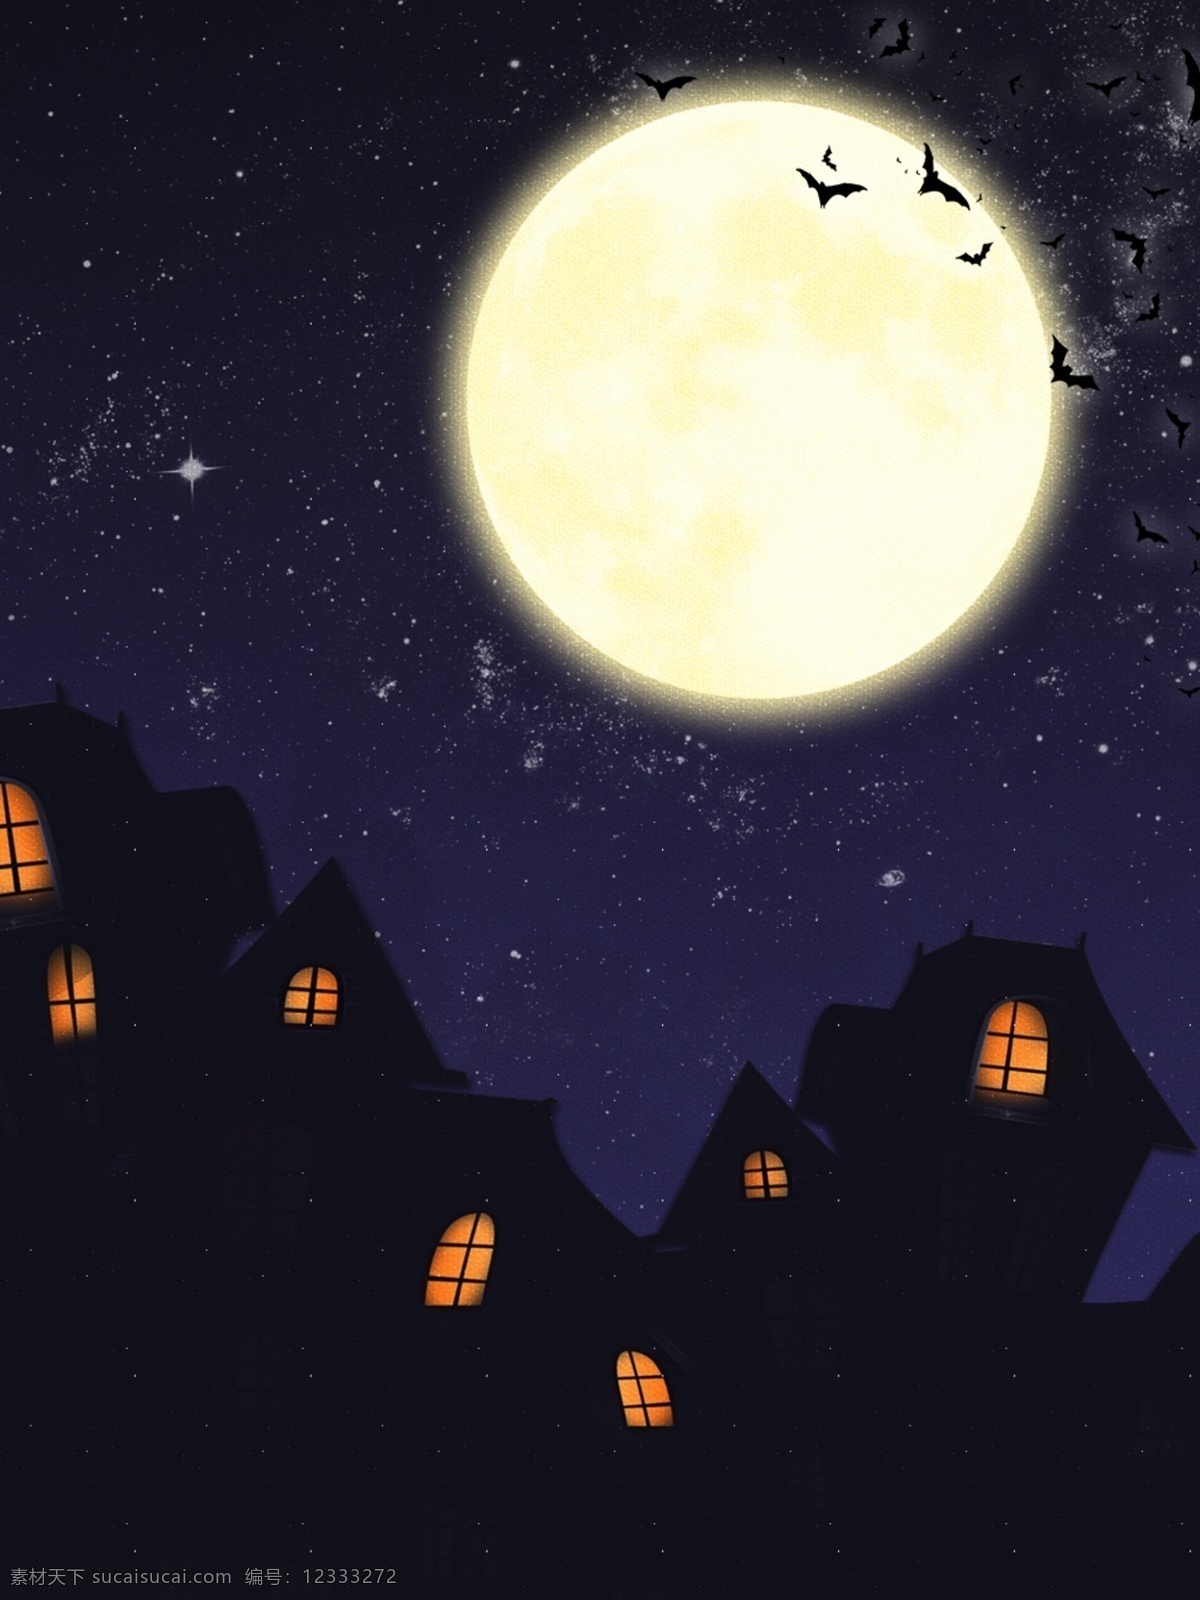 创意 夜晚 城堡 剪影 万圣节 活动 海报 背景 月亮 夜空 活动背景 星空背景 城堡背景 蝙蝠 万圣节背景 夜晚背景